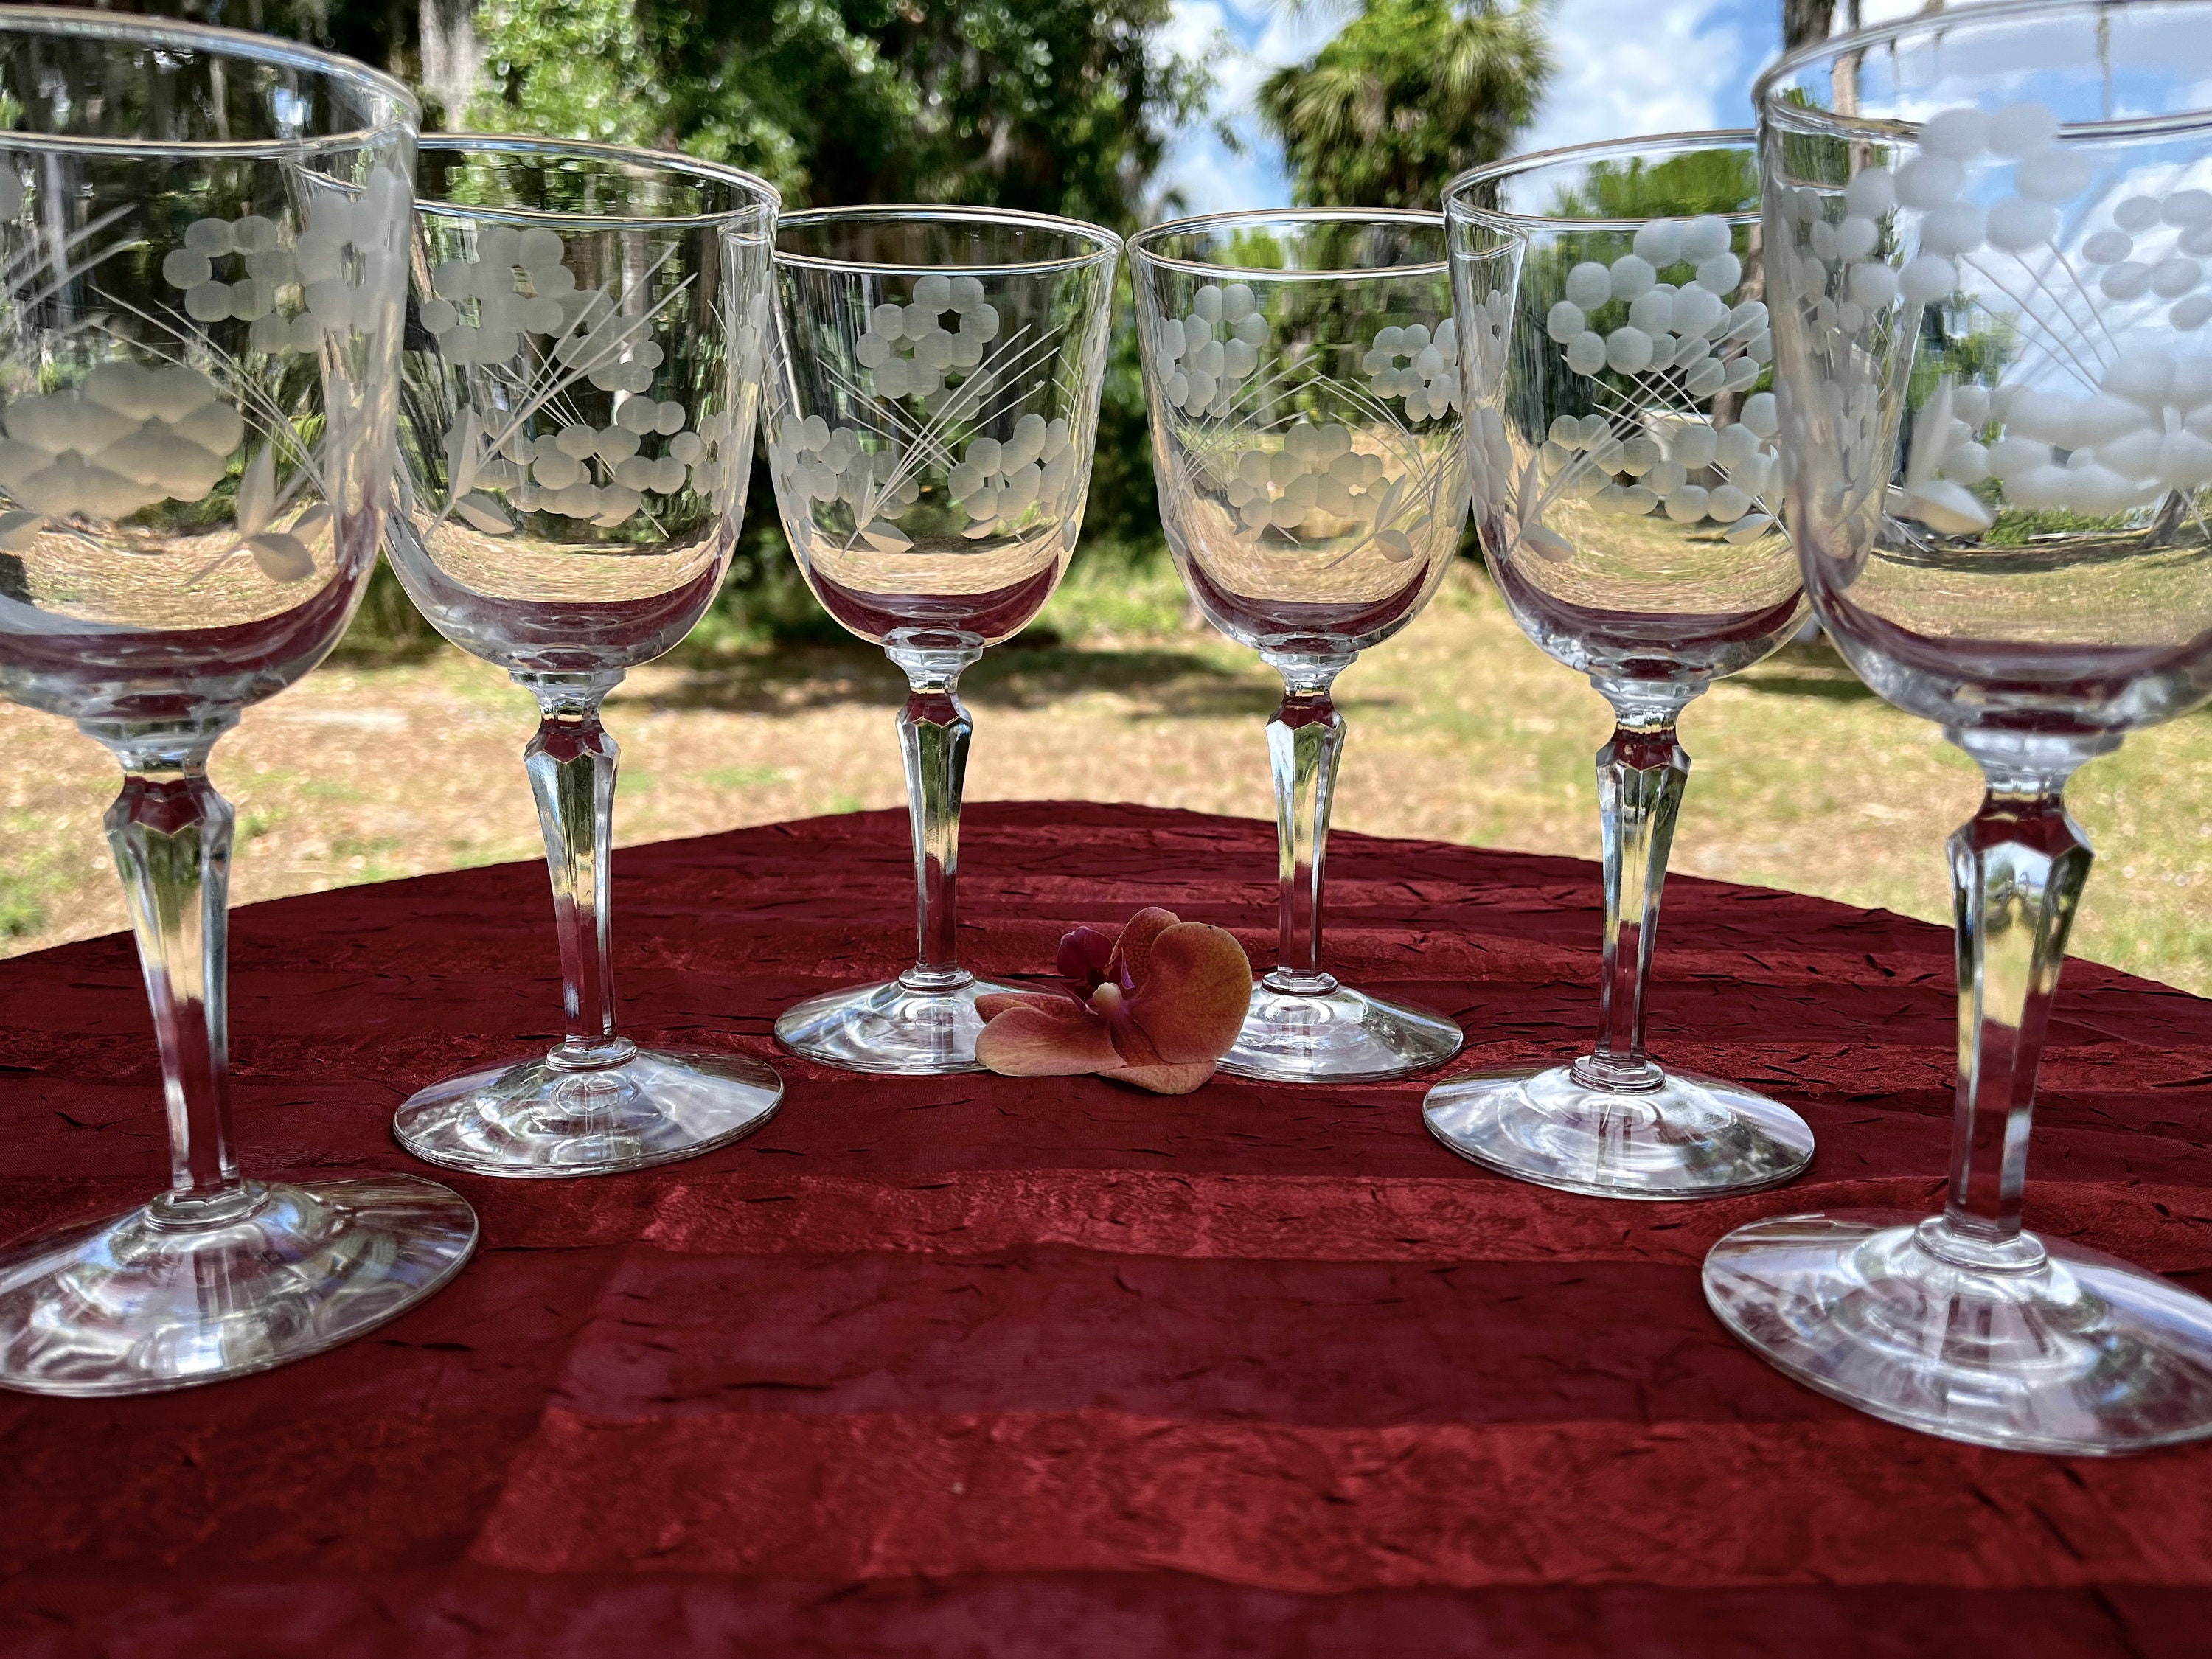 6 Vintage Etched Wine ~ Cocktail Glasses with Red stem, Vintage